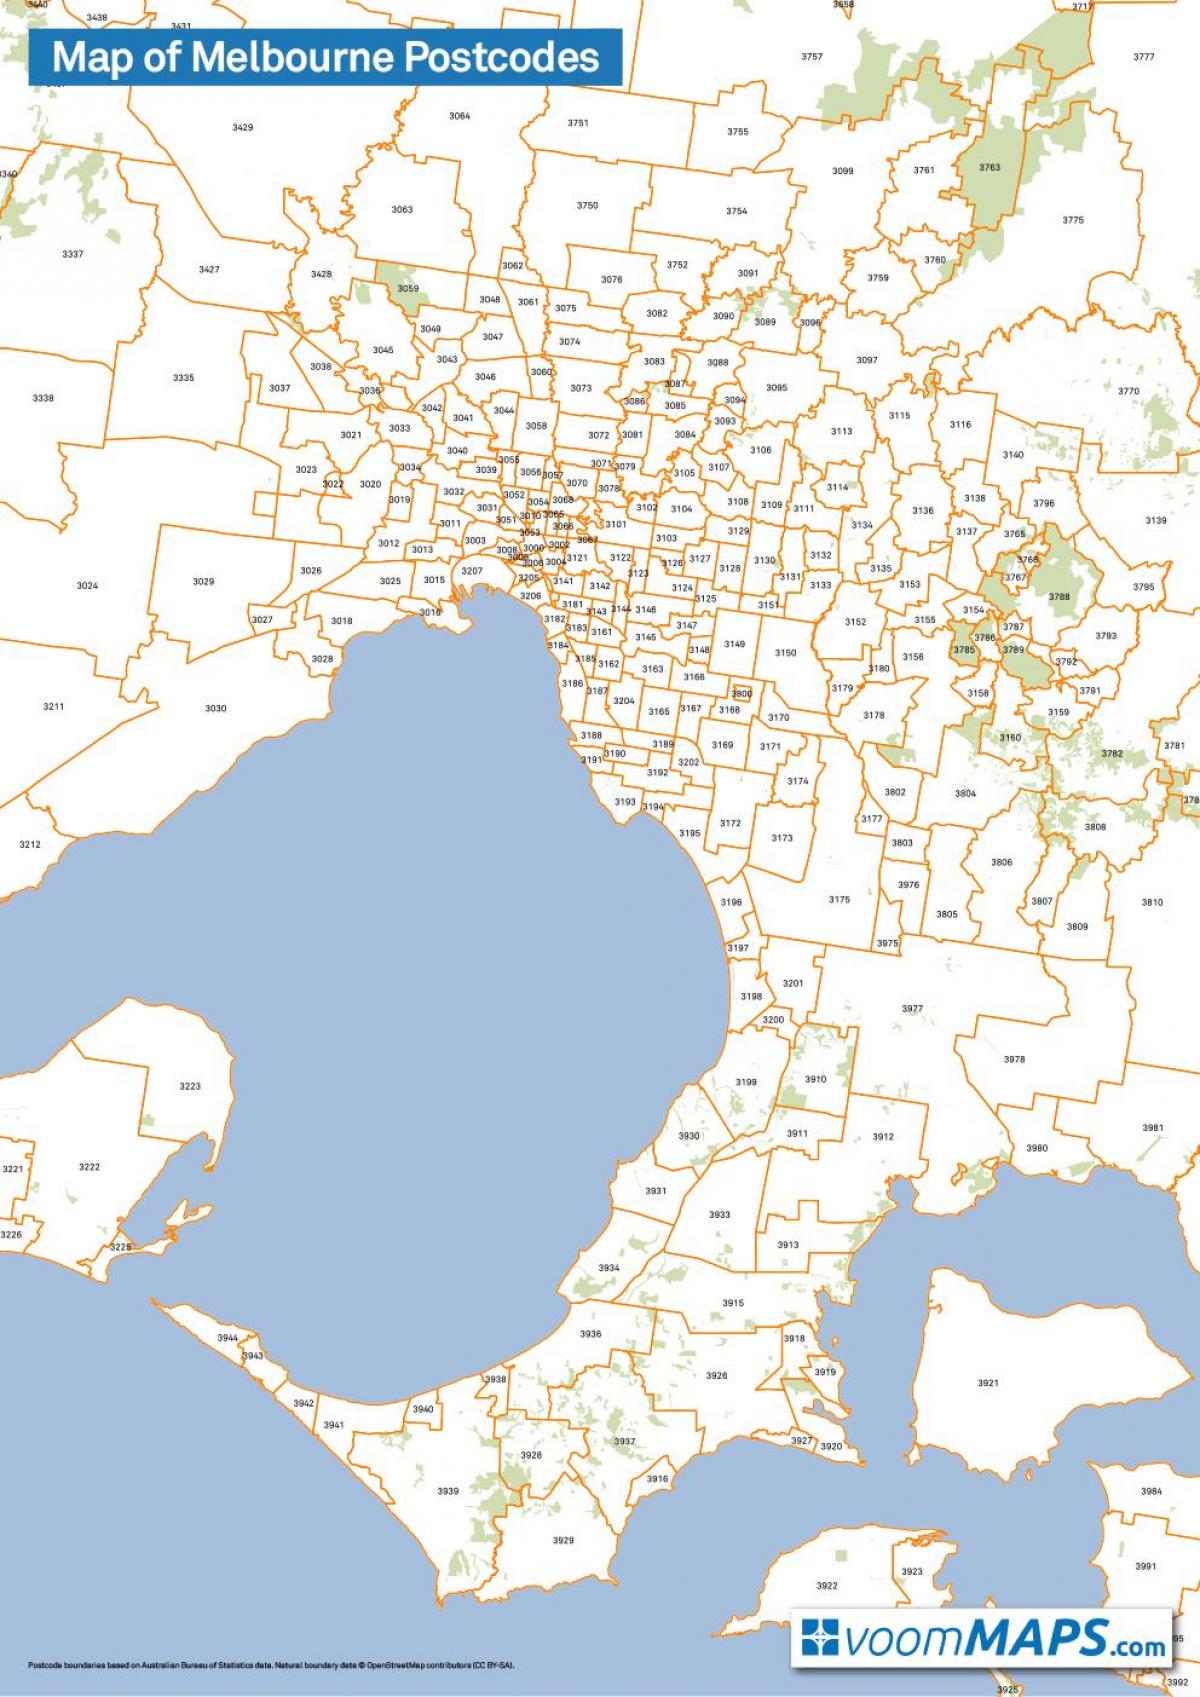 kort over Melbourne postnumre